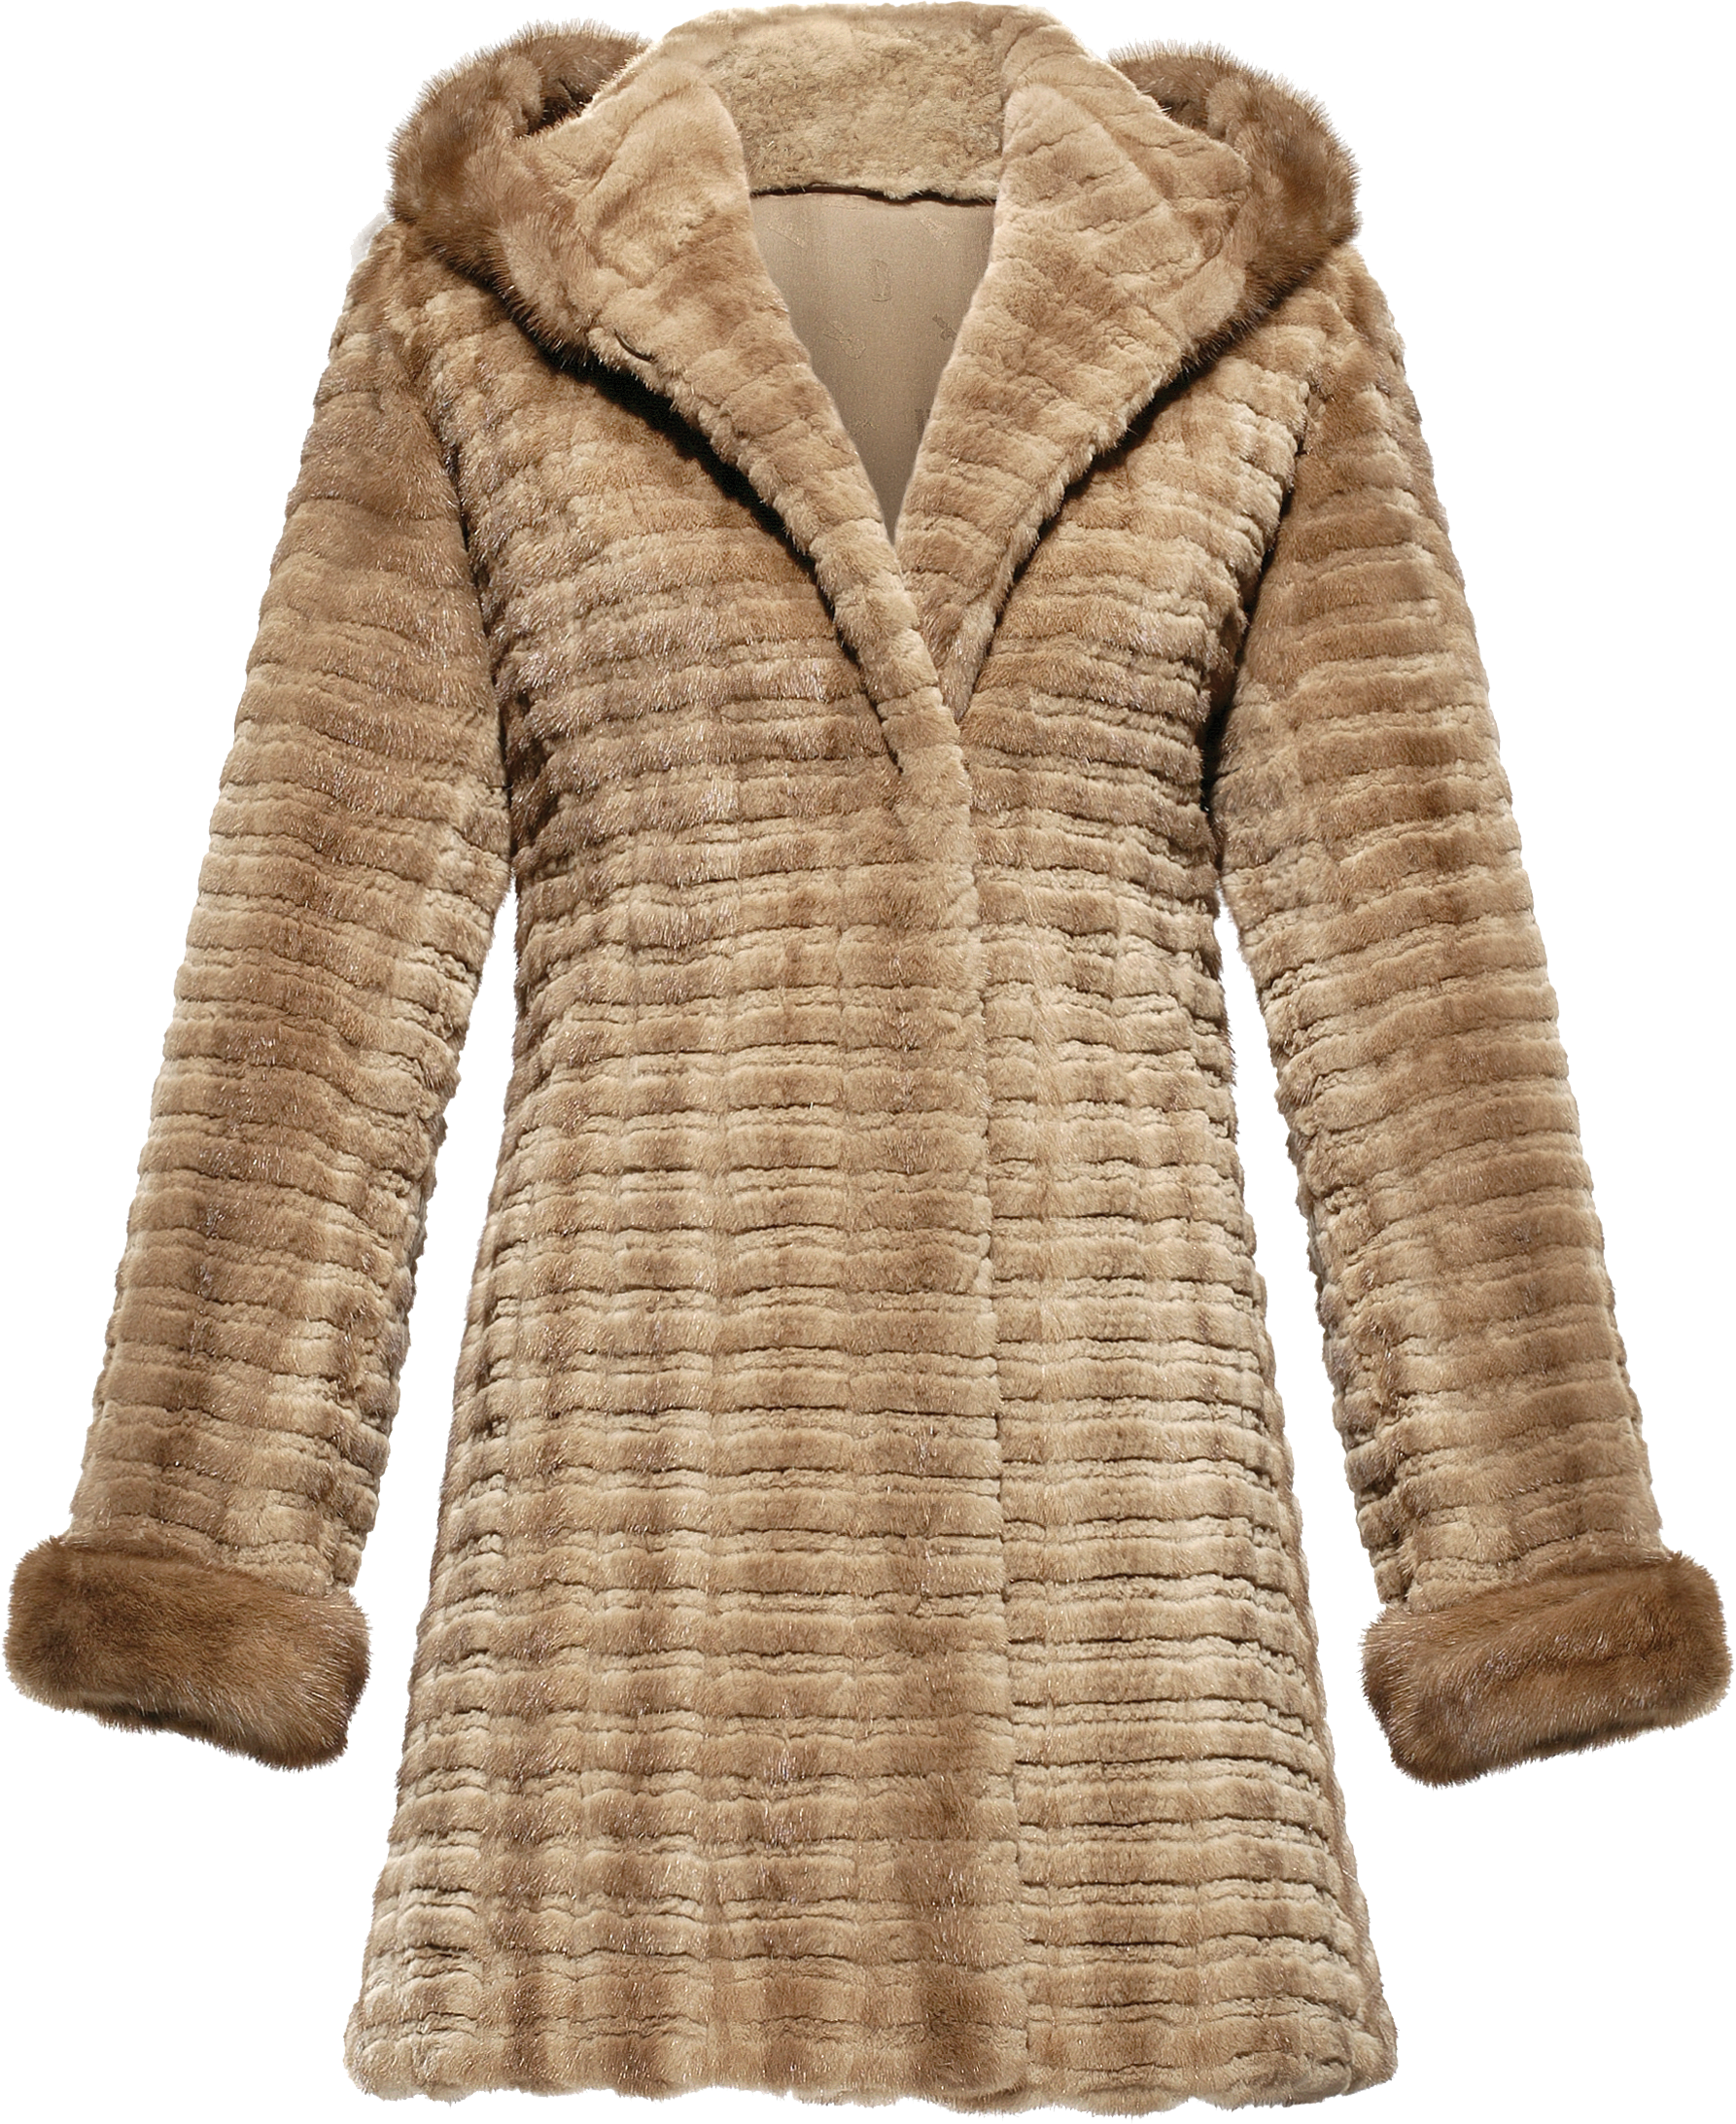 coat clipart woolen jacket